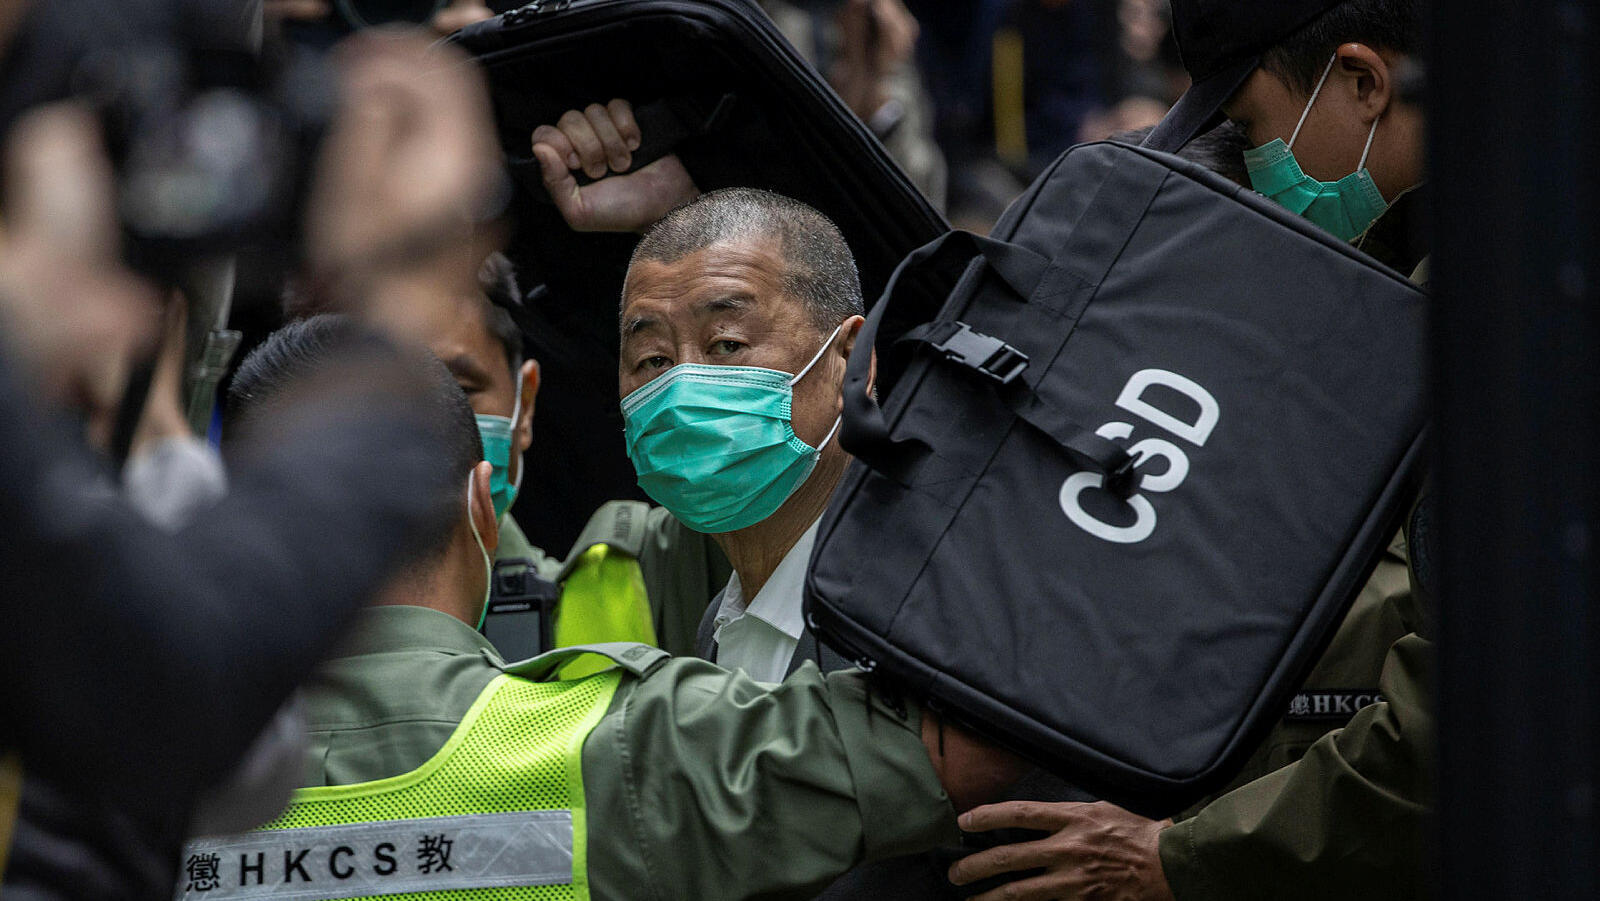 ג'ימי לאי טייקון תקשורת מ הונג קונג נשפט על השתתפות וארגון הפגנות